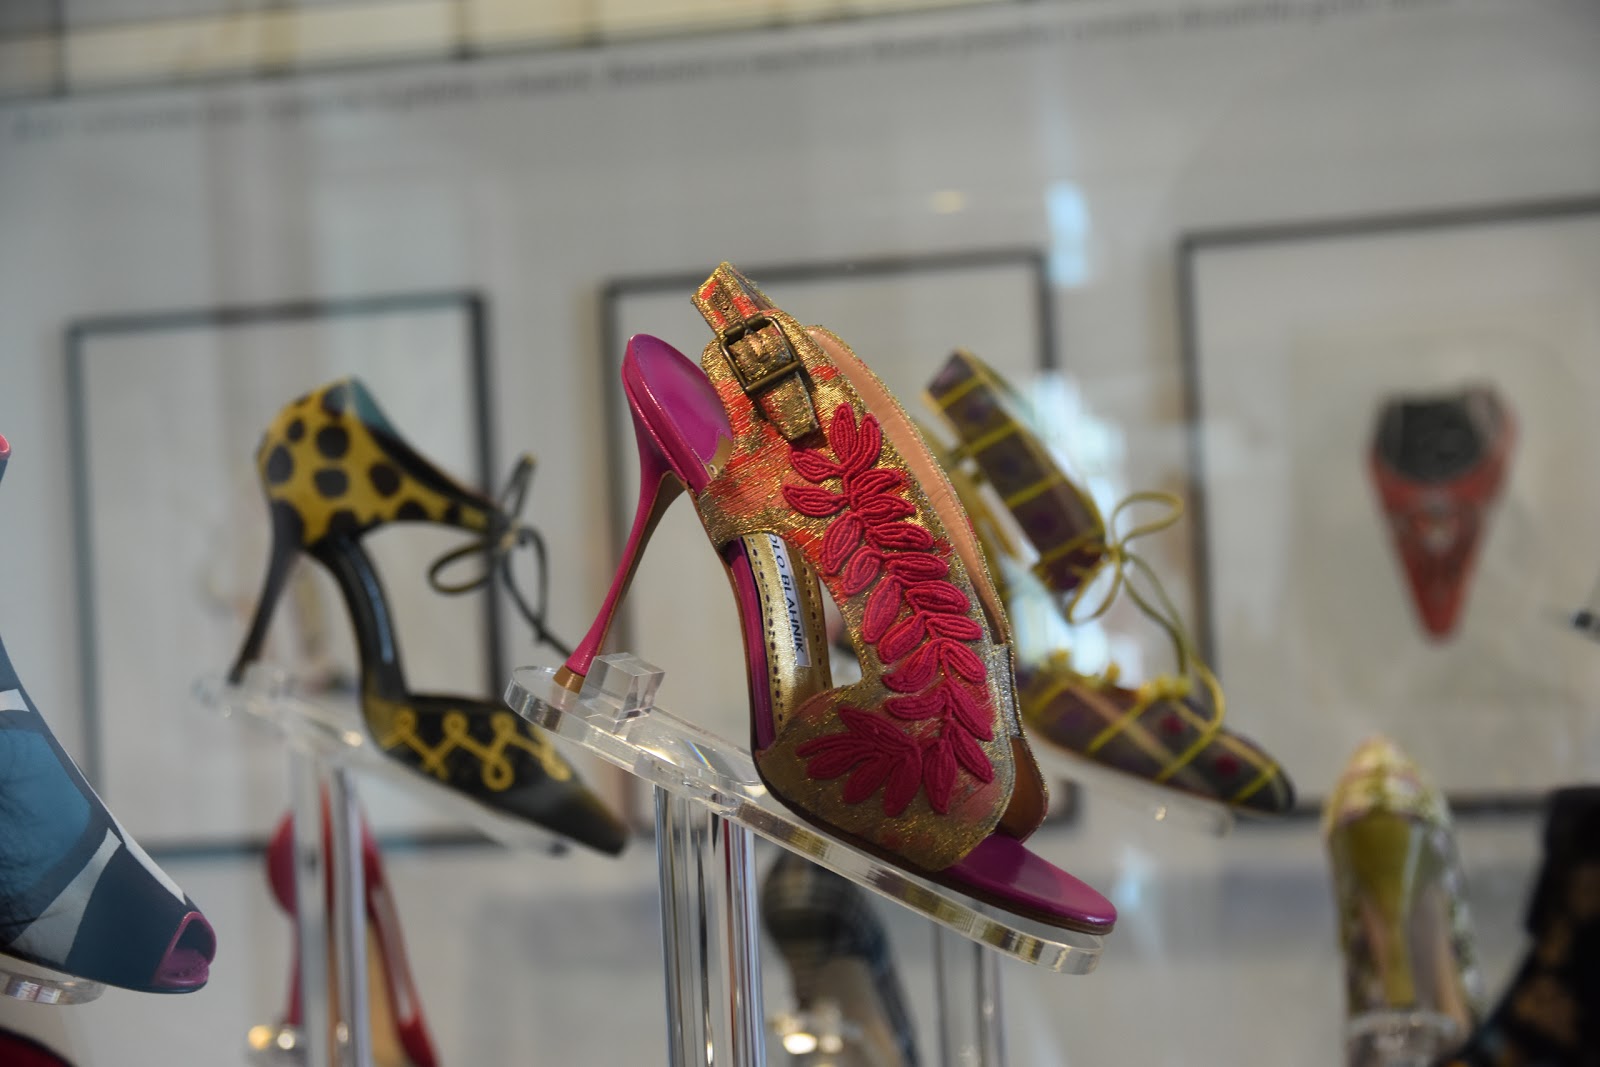 Manolo Blahnik - The Art of Shoes exhibition - Magnifique Brunette